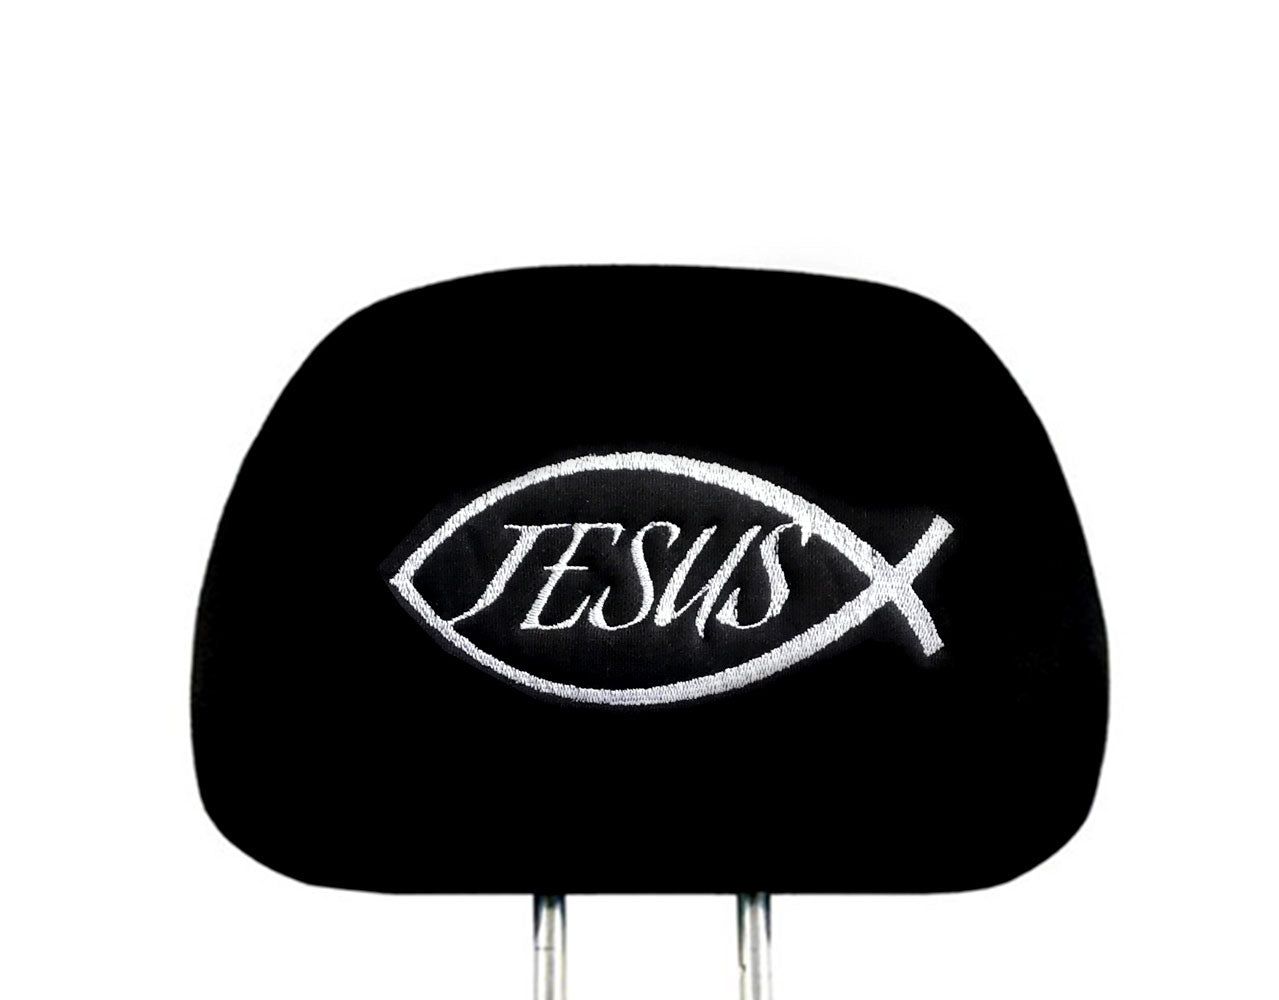 Embroidery Jesus Fish Design Auto Truck SUV Car Seat Headrest Cover Accessory 1 Piece - Yupbizauto